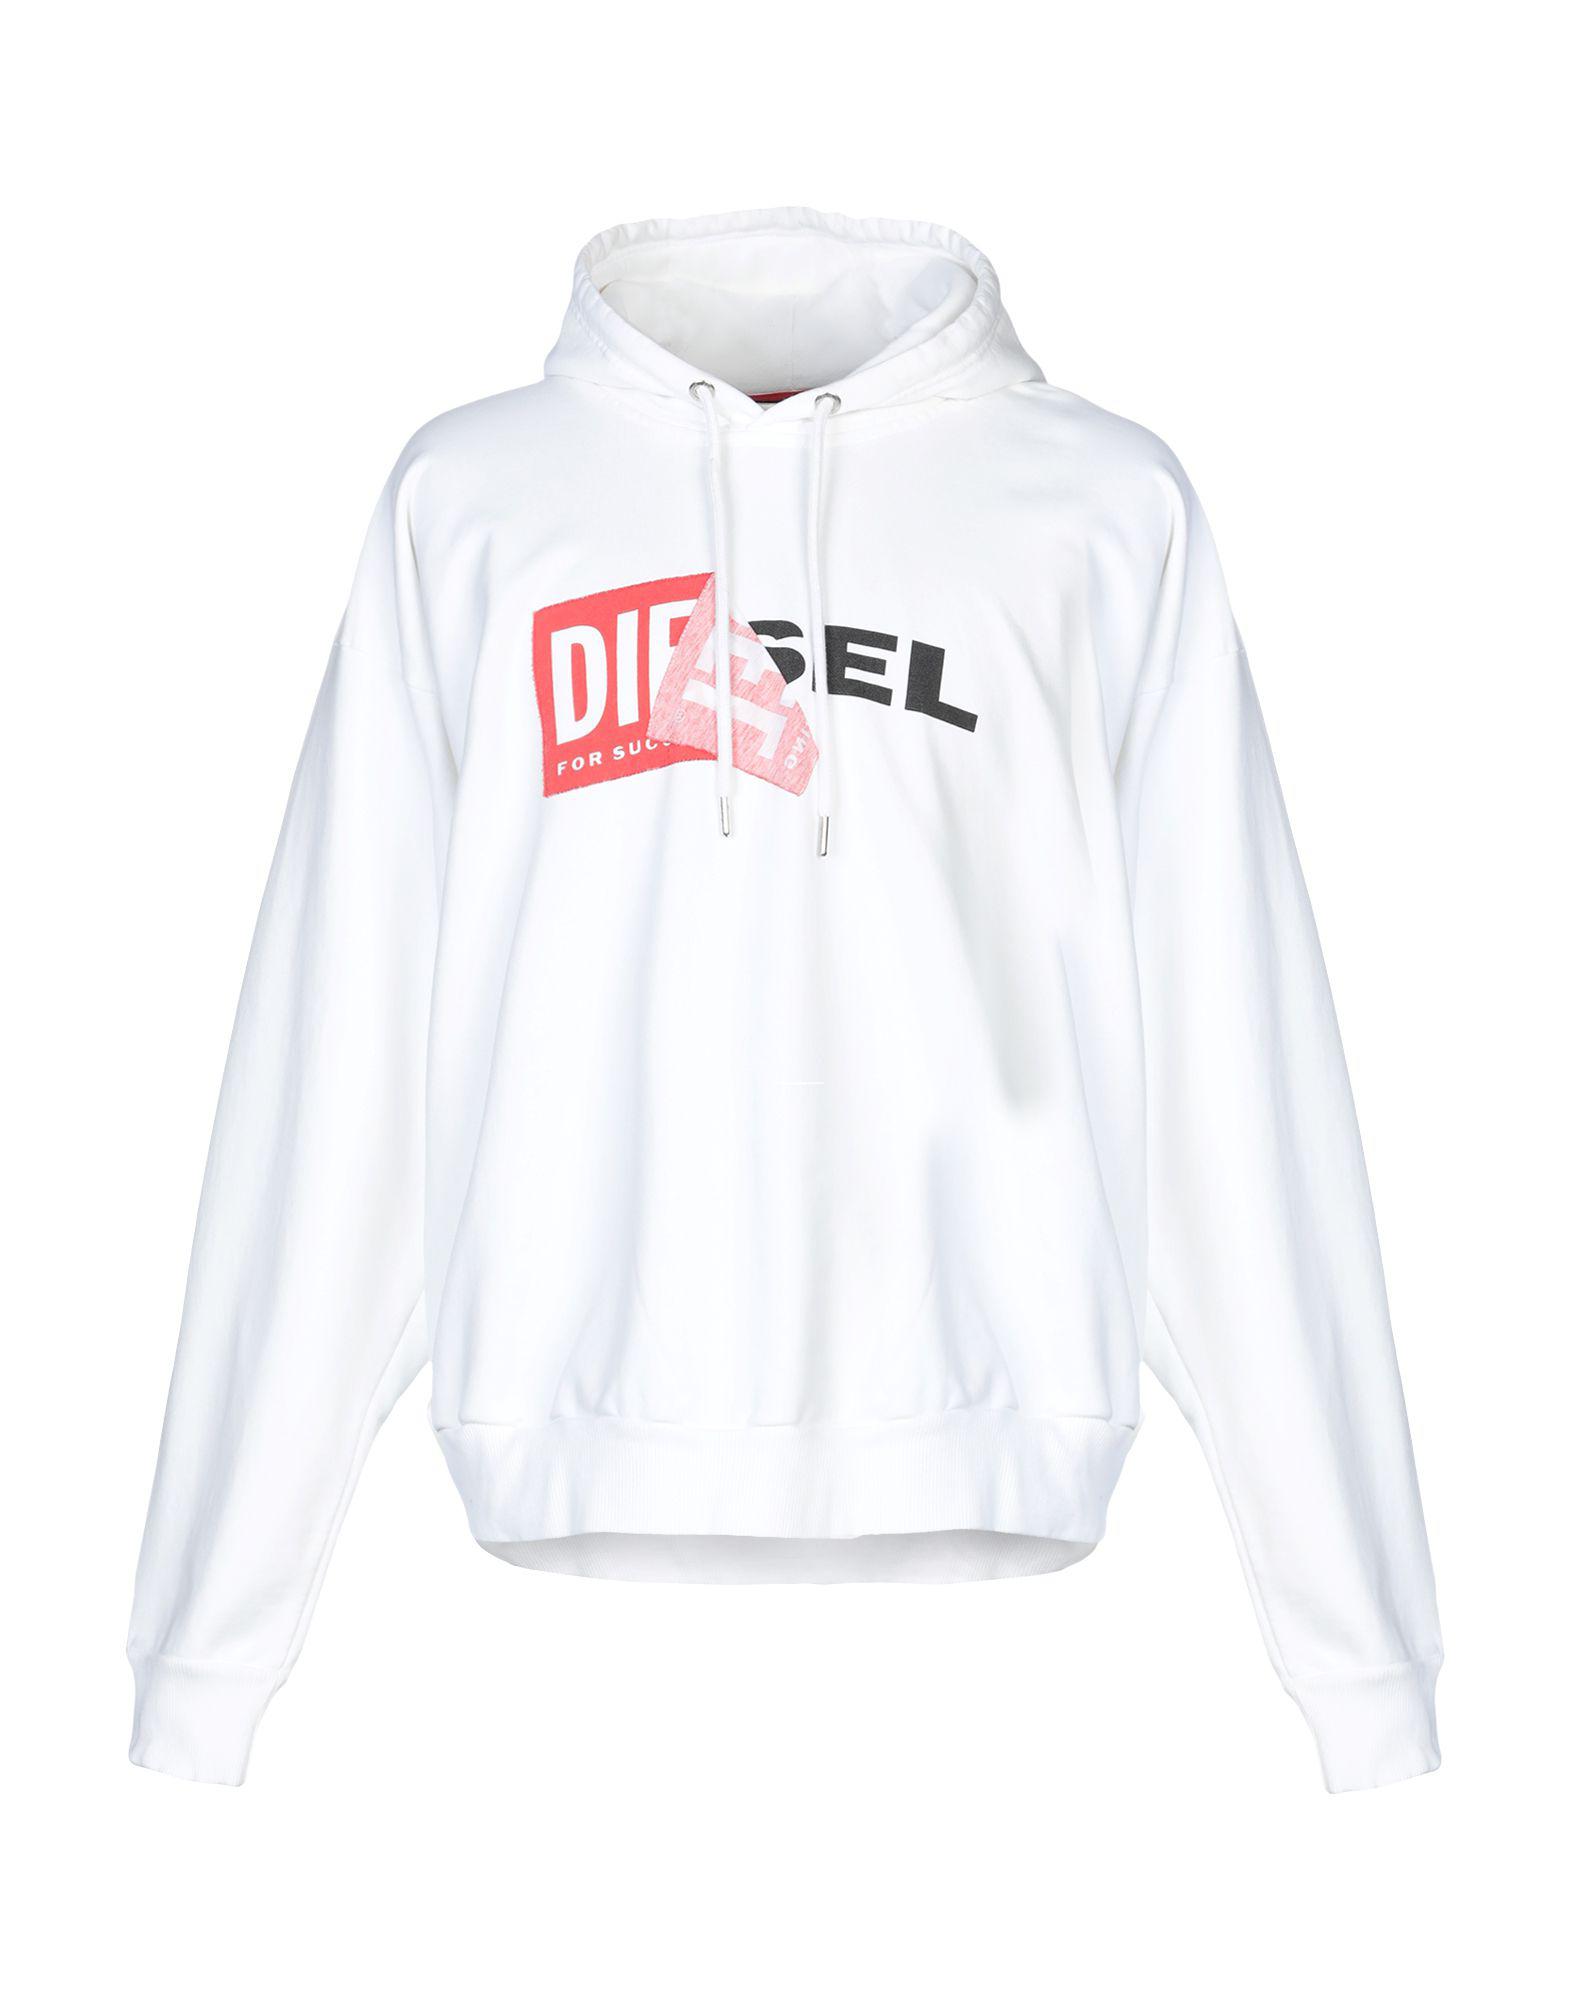 DIESEL Fleece Sweatshirt in White for Men - Lyst